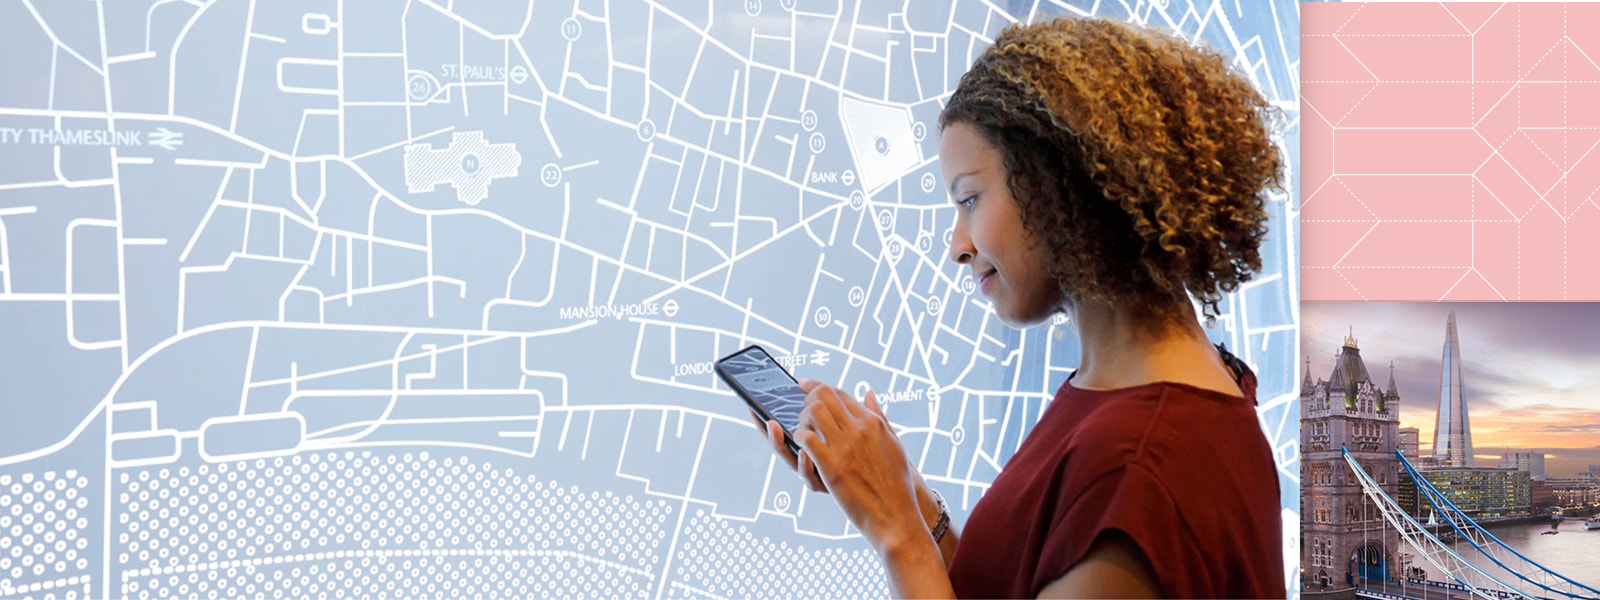 Mulher usa um dispositivo móvel na frente de uma exibição de mapa